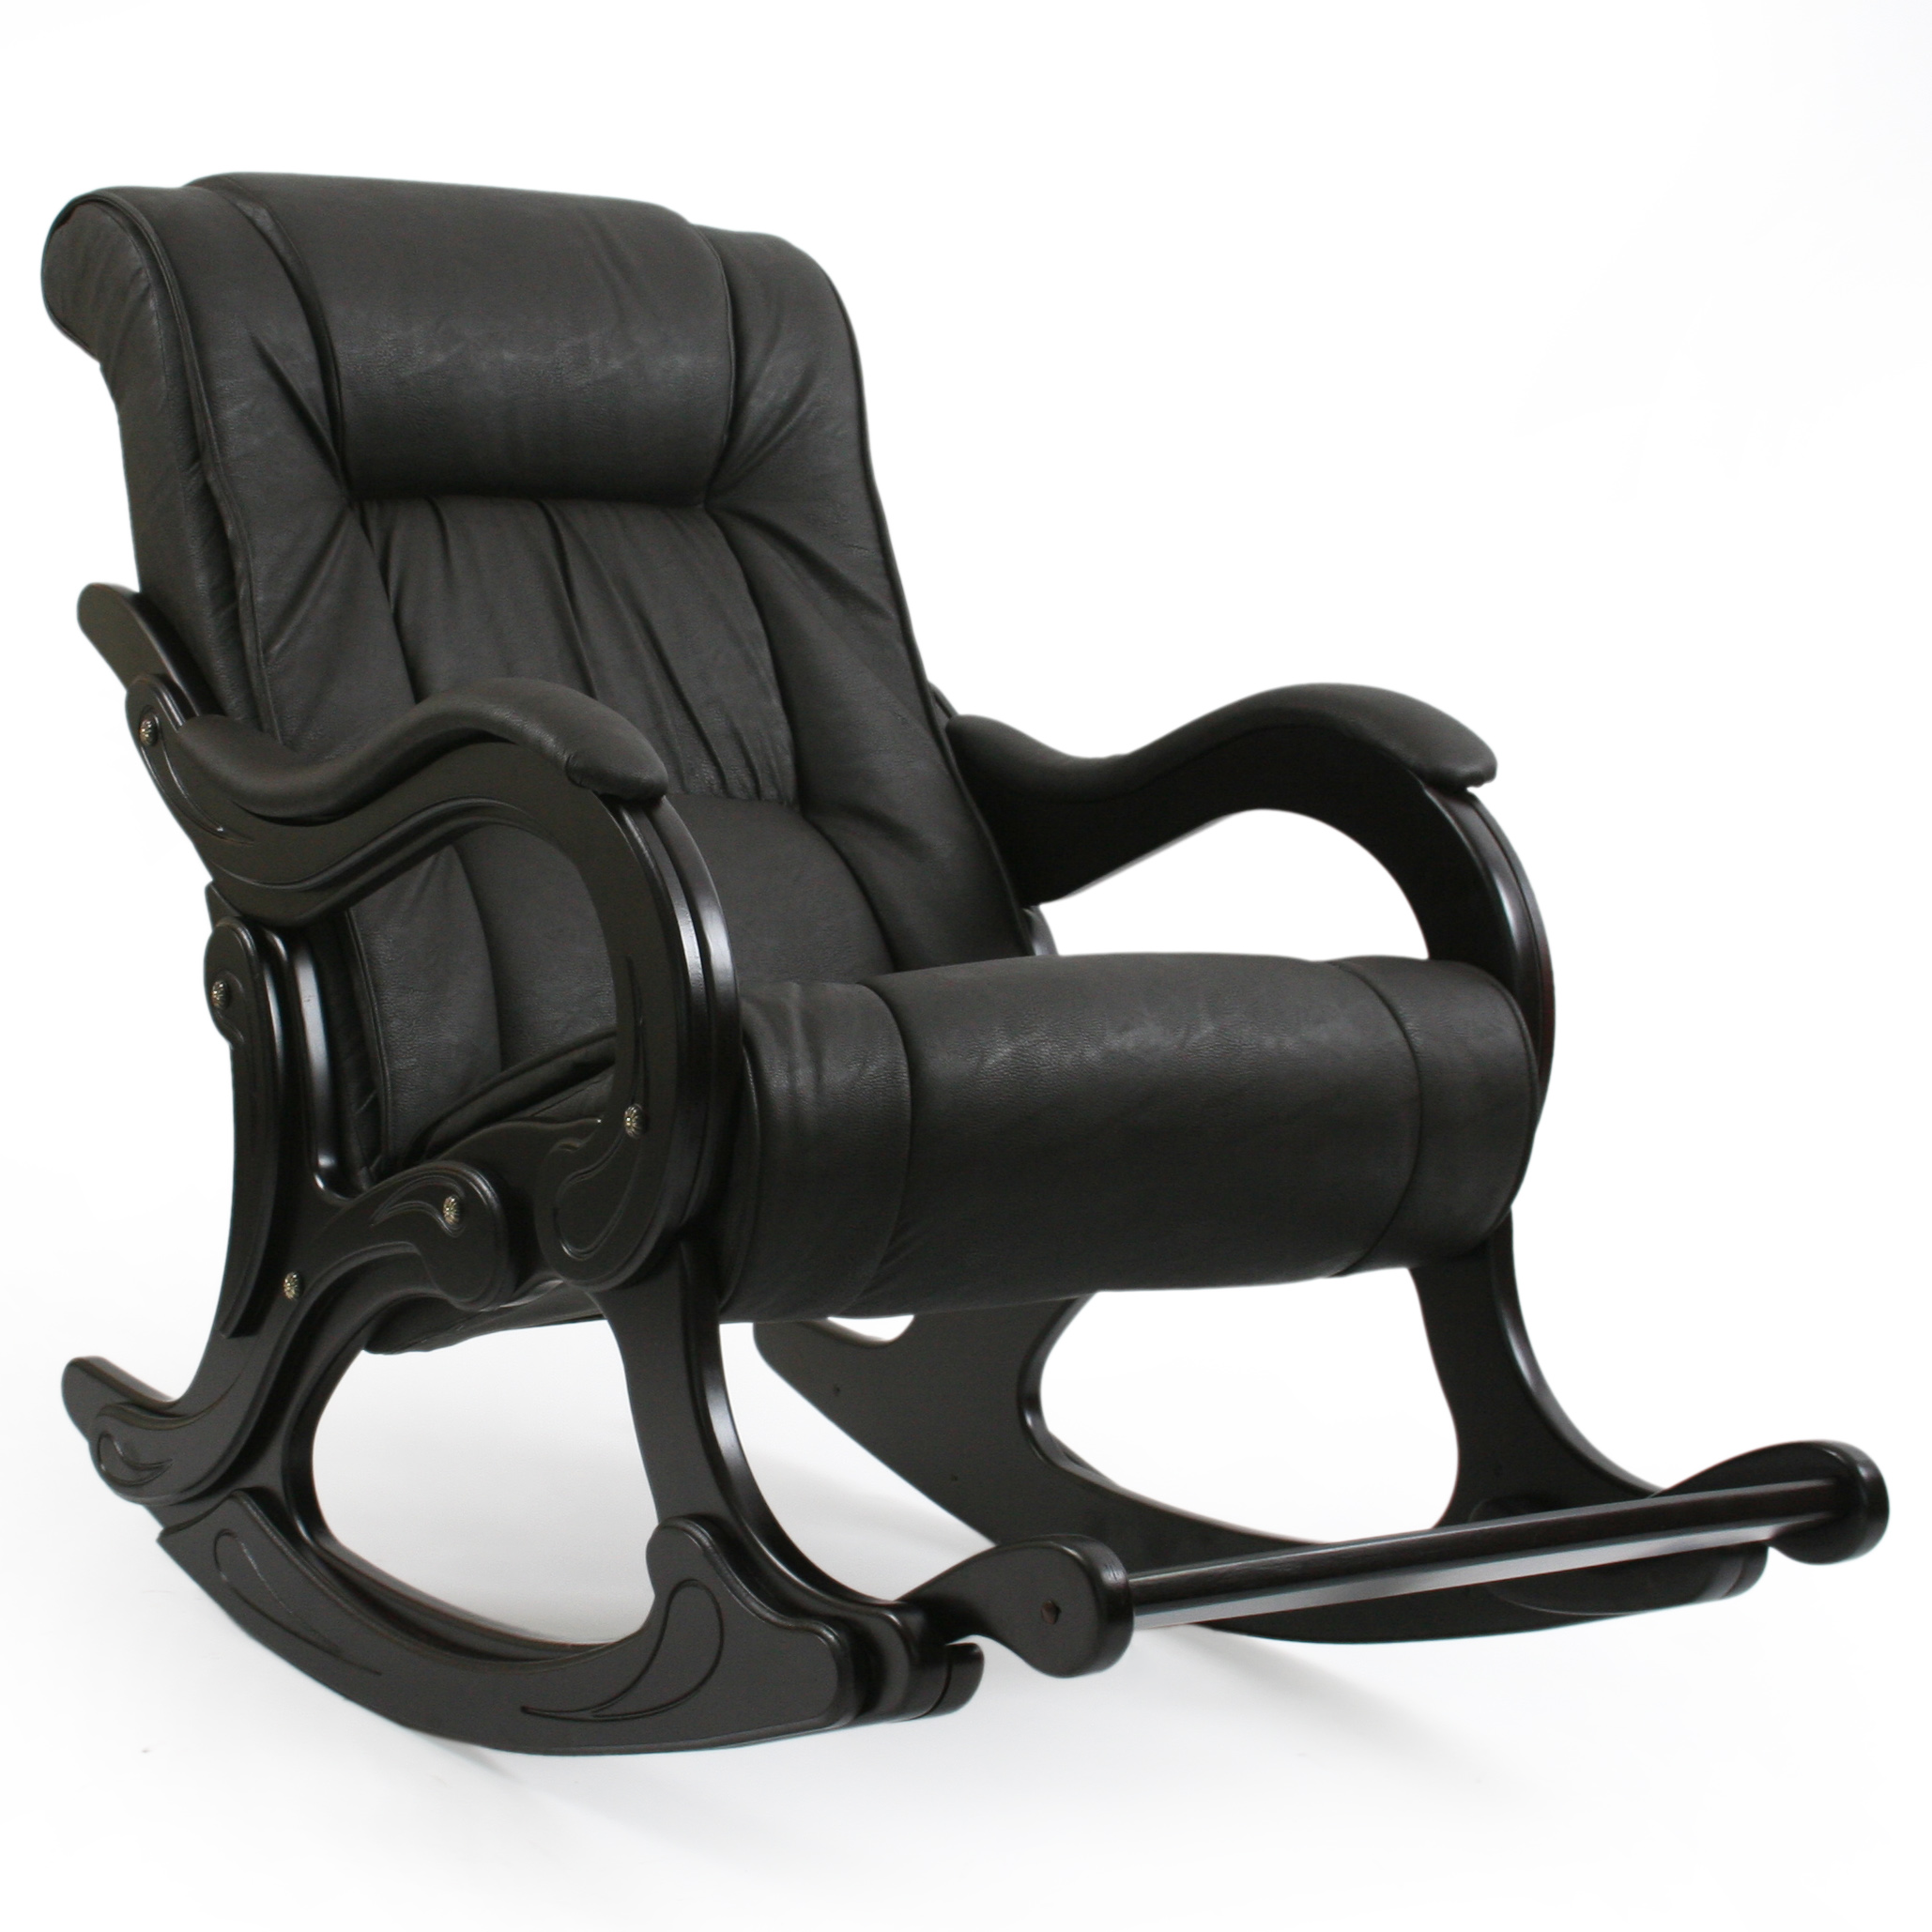 Недорогие кресла качалки от производителя. Кресло-качалка Импэкс 77. Кресло-качалка комфорт (мод.44/Дунди-112/венге). Кресло-качалка модель 77 Дунди 112. Кресло-качалка комфорт модель 77.